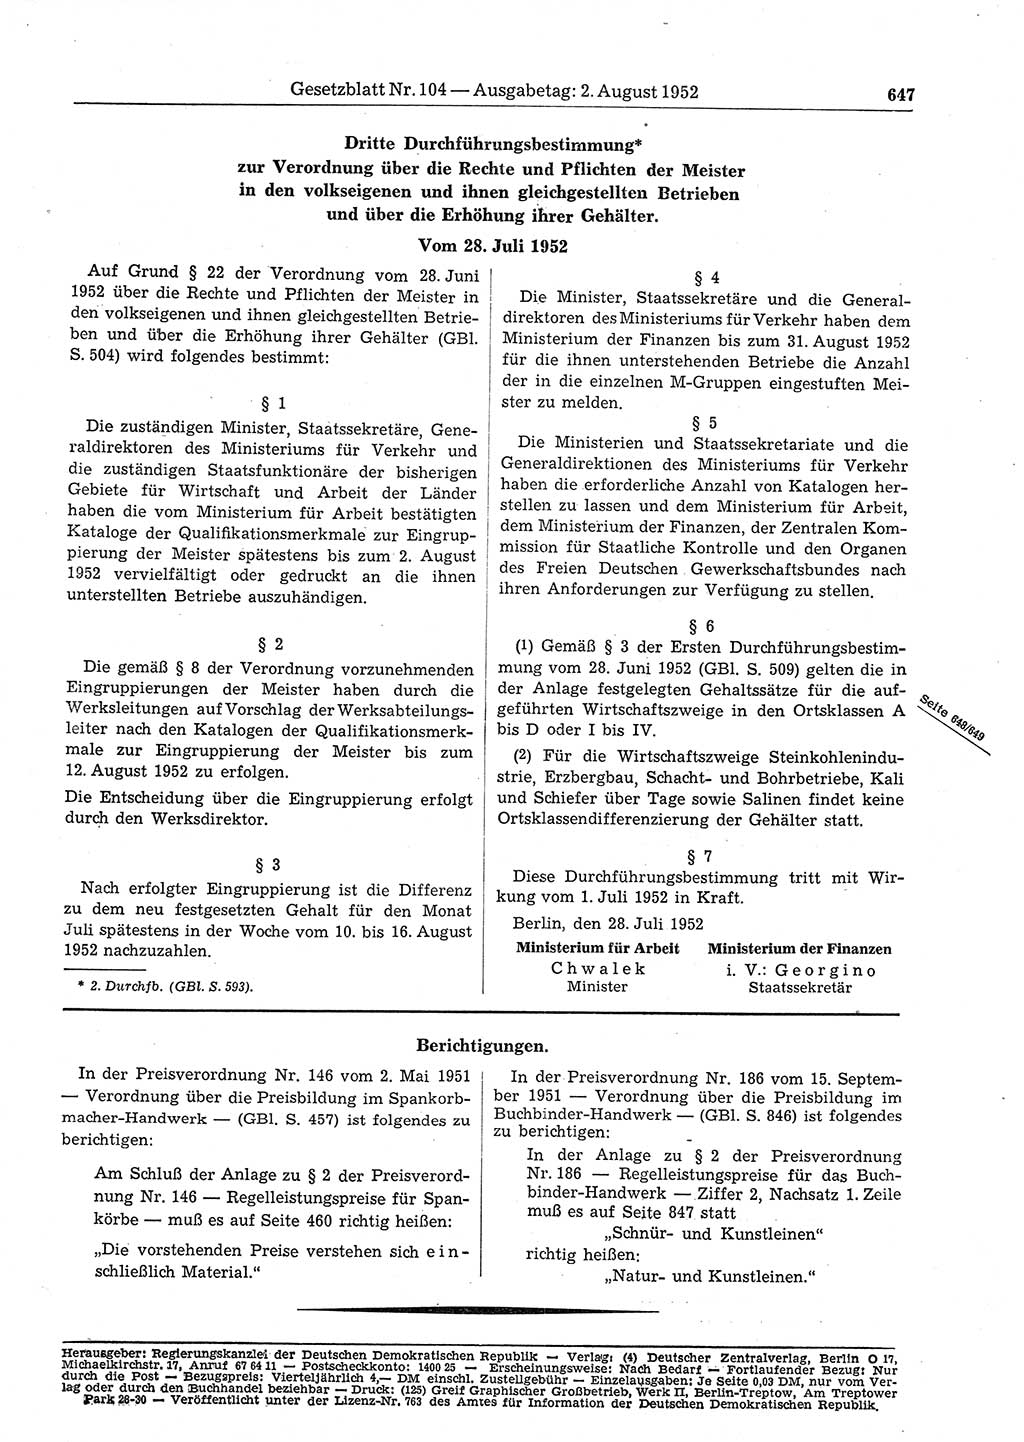 Gesetzblatt (GBl.) der Deutschen Demokratischen Republik (DDR) 1952, Seite 647 (GBl. DDR 1952, S. 647)